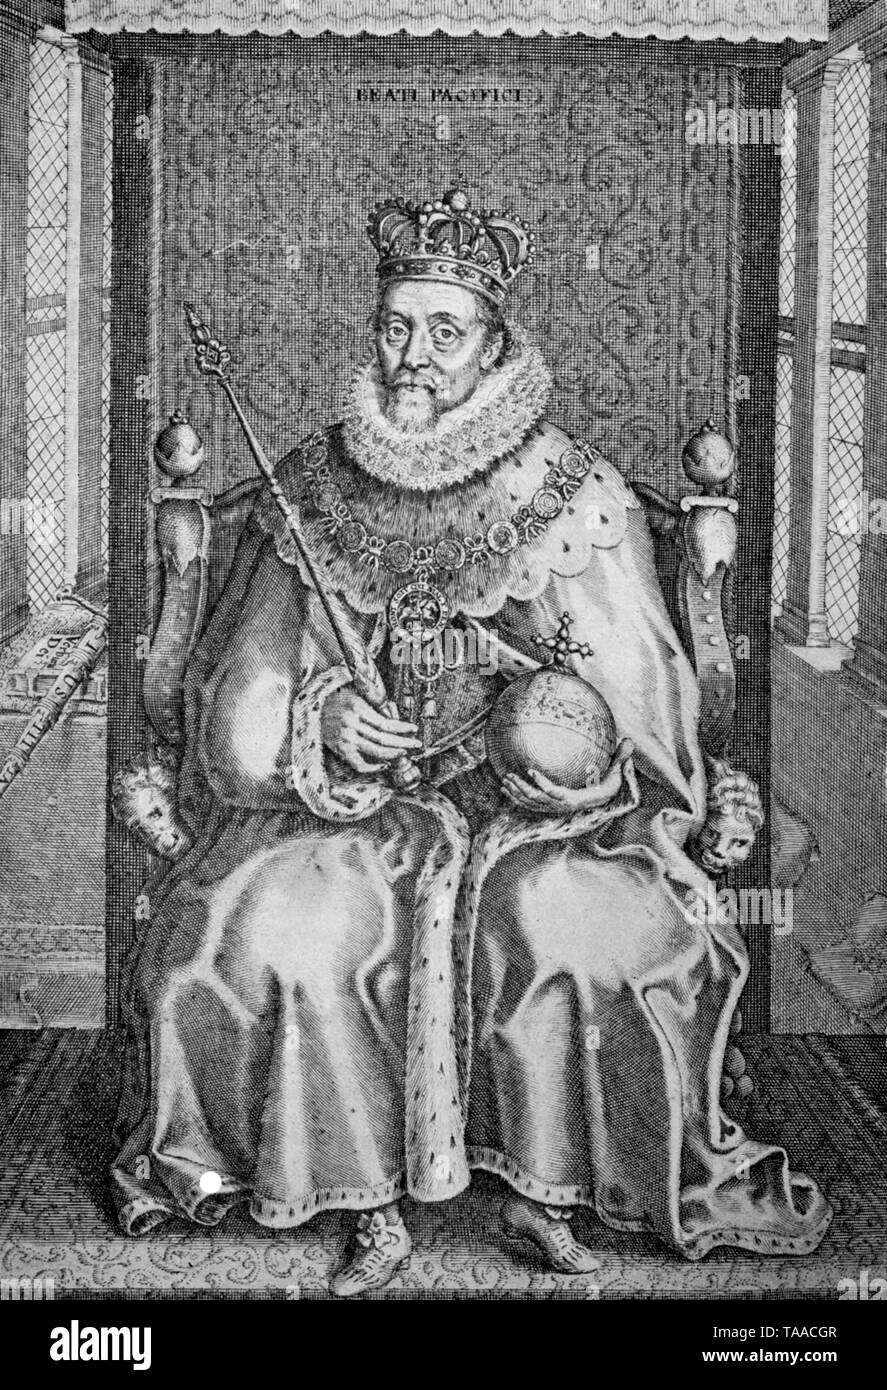 El rey Jaime I, tal como está representado en el frontispicio de sus obras completas, publicado en 1616. James y yo VI (1566-1625) fue rey de Escocia como Jacobo VI y el Rey de Inglaterra e Irlanda como Jaime I de la unión de las coronas inglesa y escocesa en 1603 hasta su muerte. Foto de stock